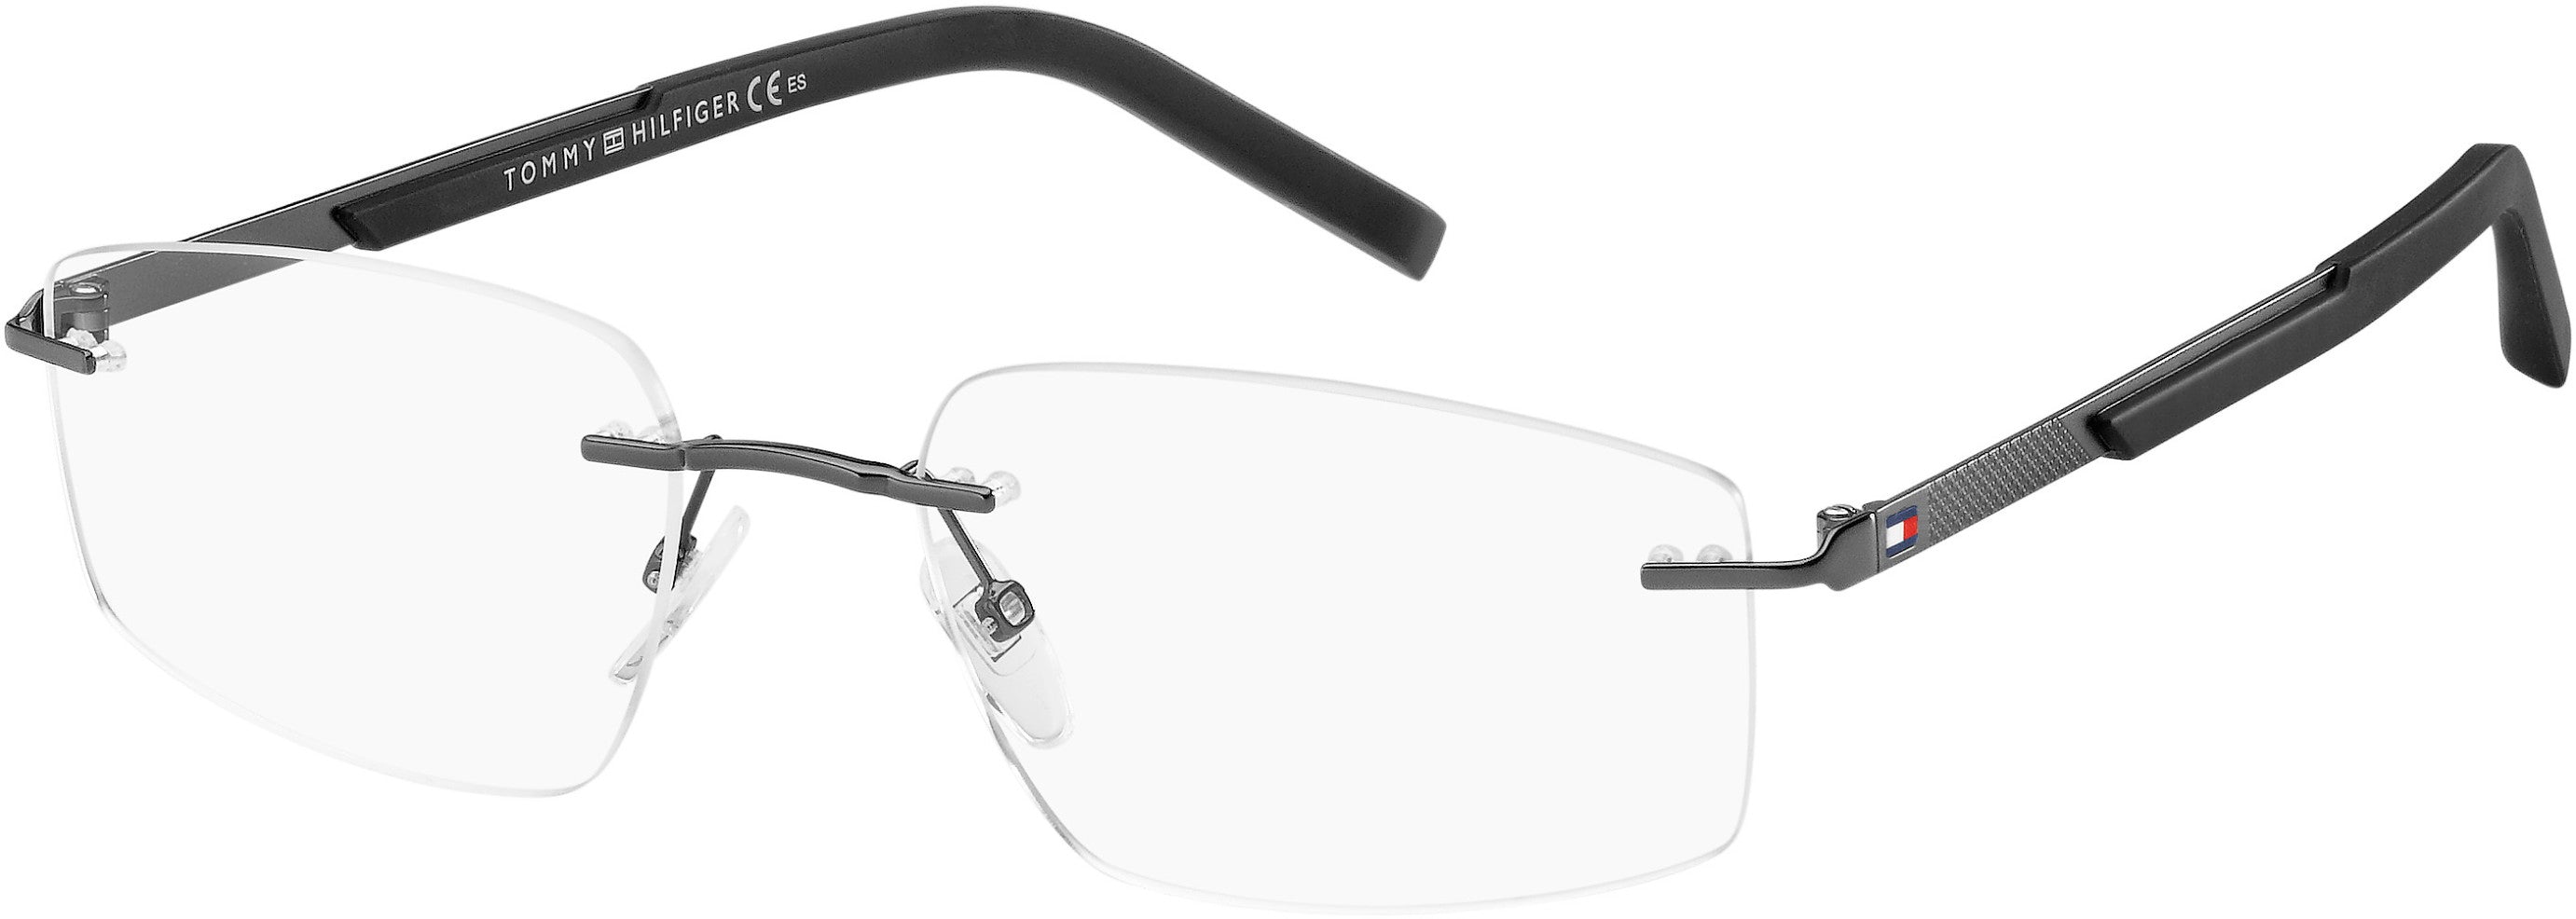 Tommy Hilfiger T. Hilfiger 1691 Rectangular Eyeglasses 0V81-0V81  Dark Ruthenium Black (00 Demo Lens)